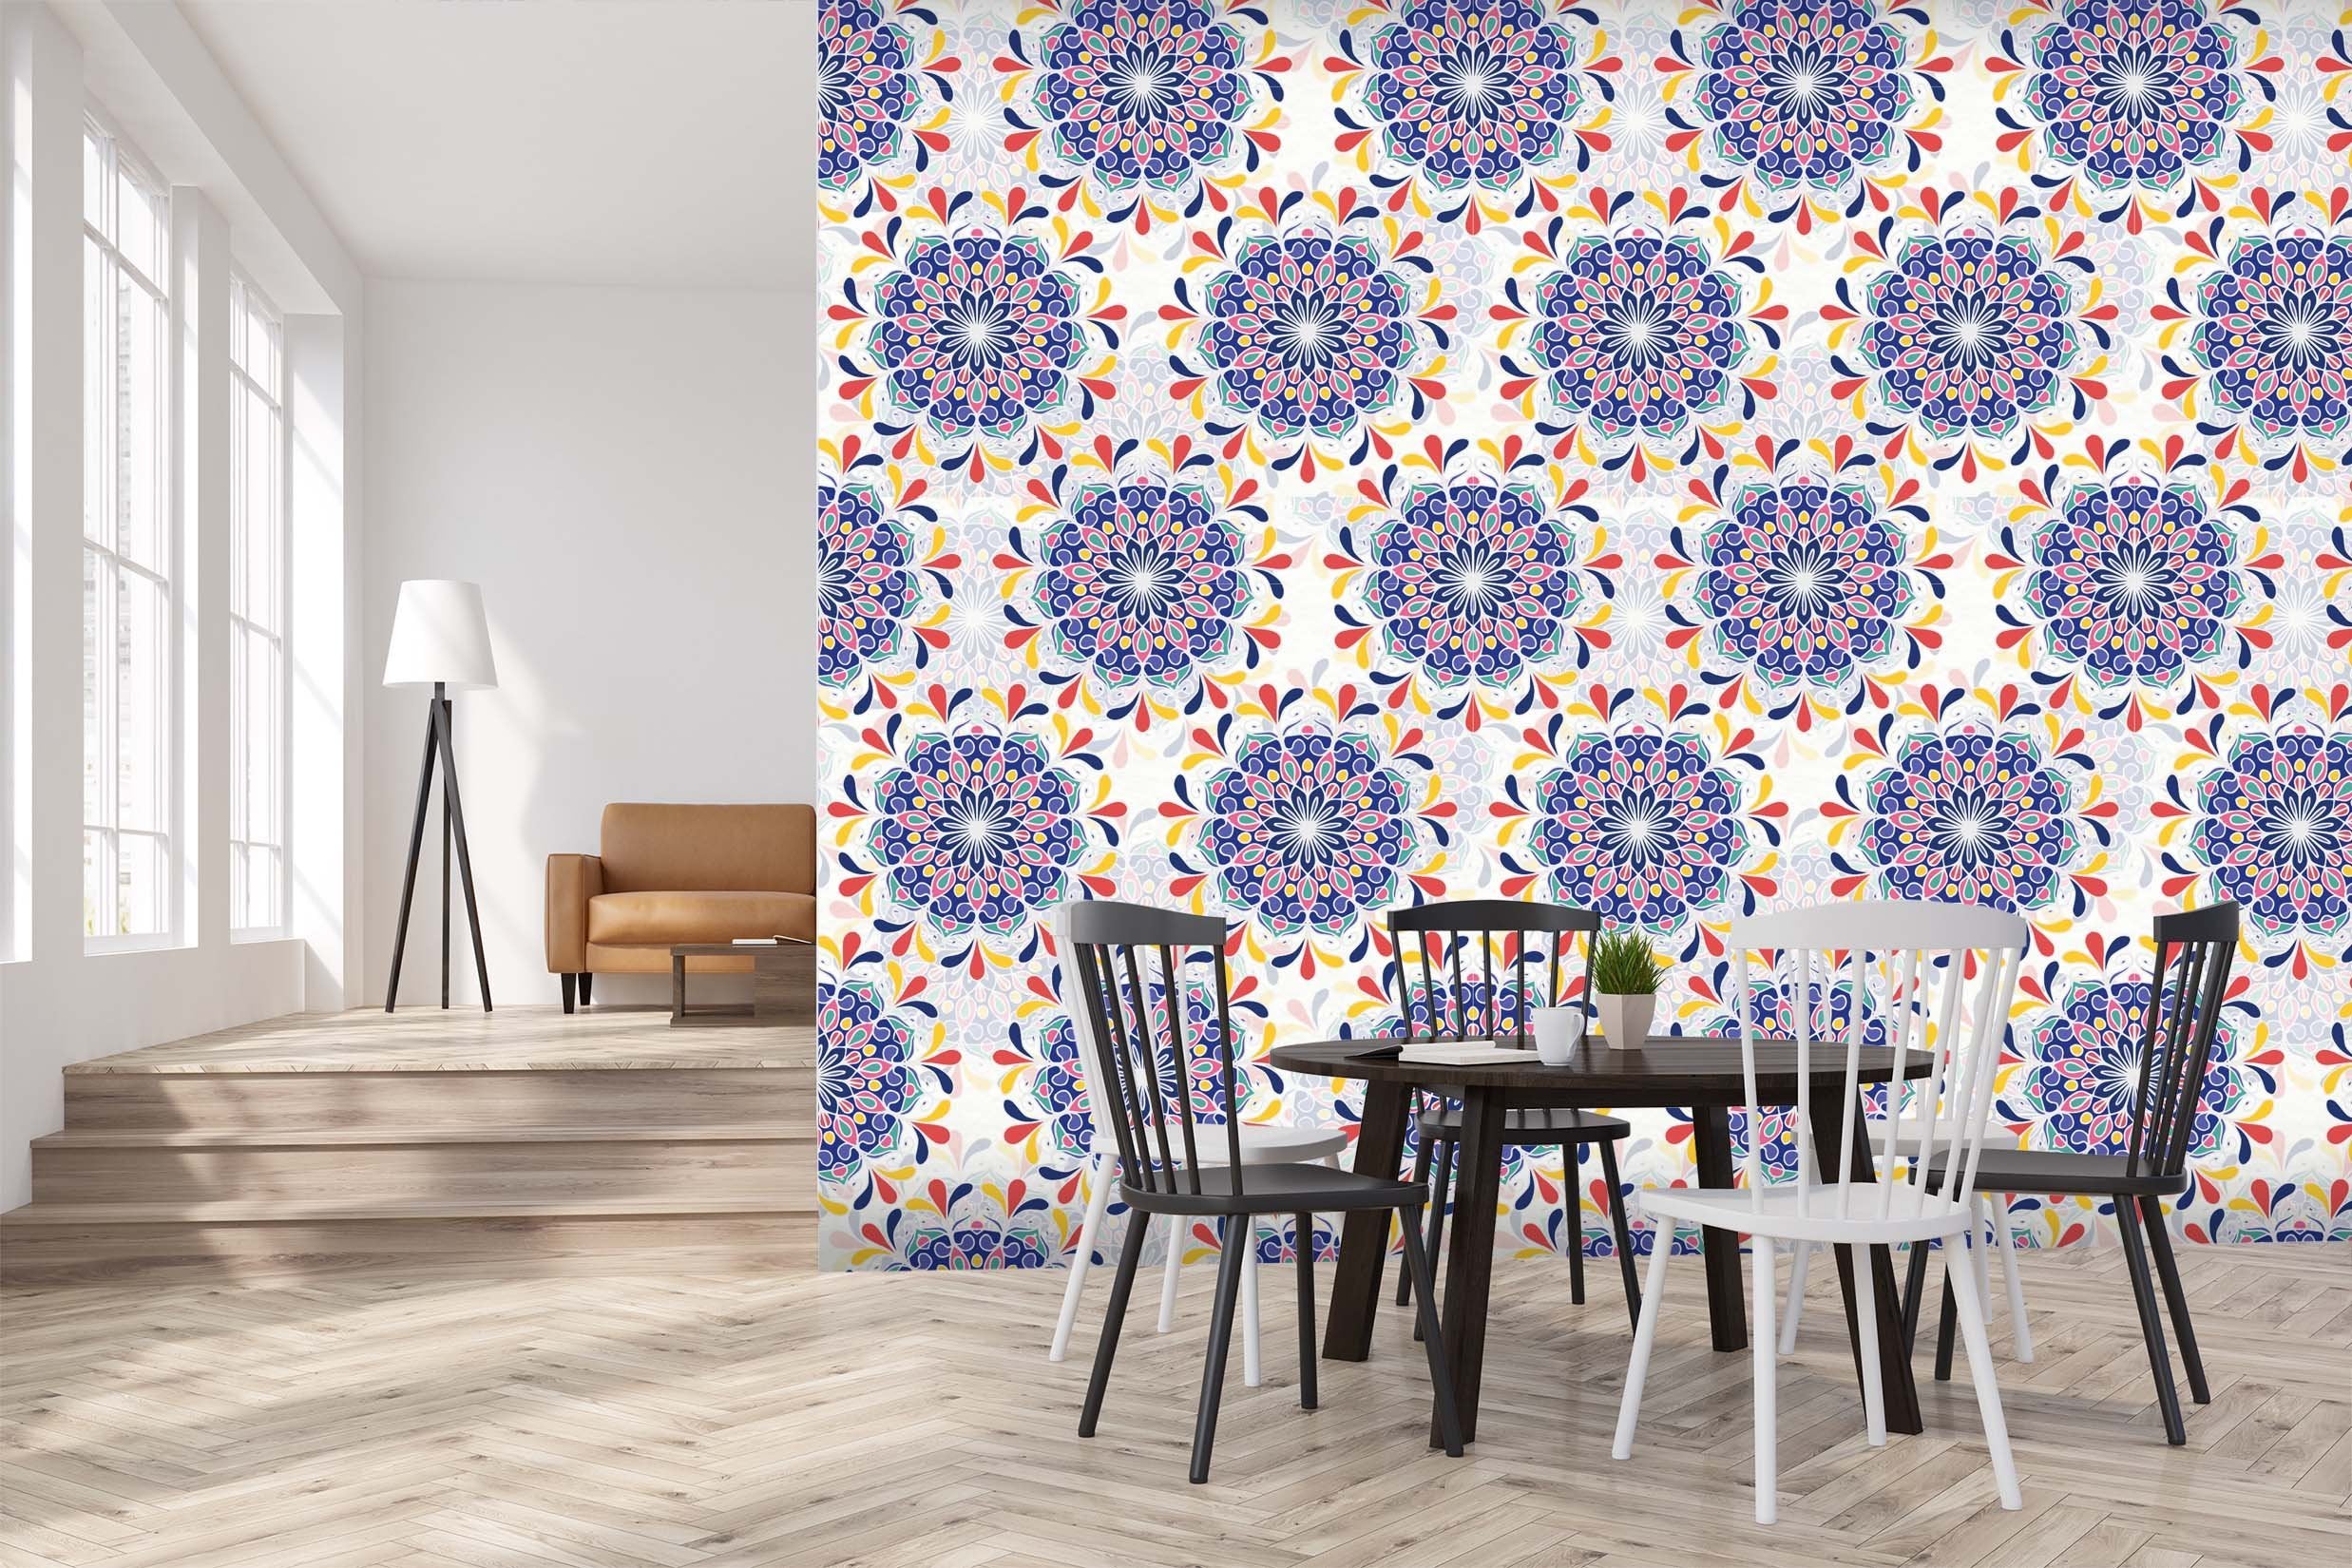 3D Blue Flower Pattern 422 Wallpaper AJ Wallpaper 